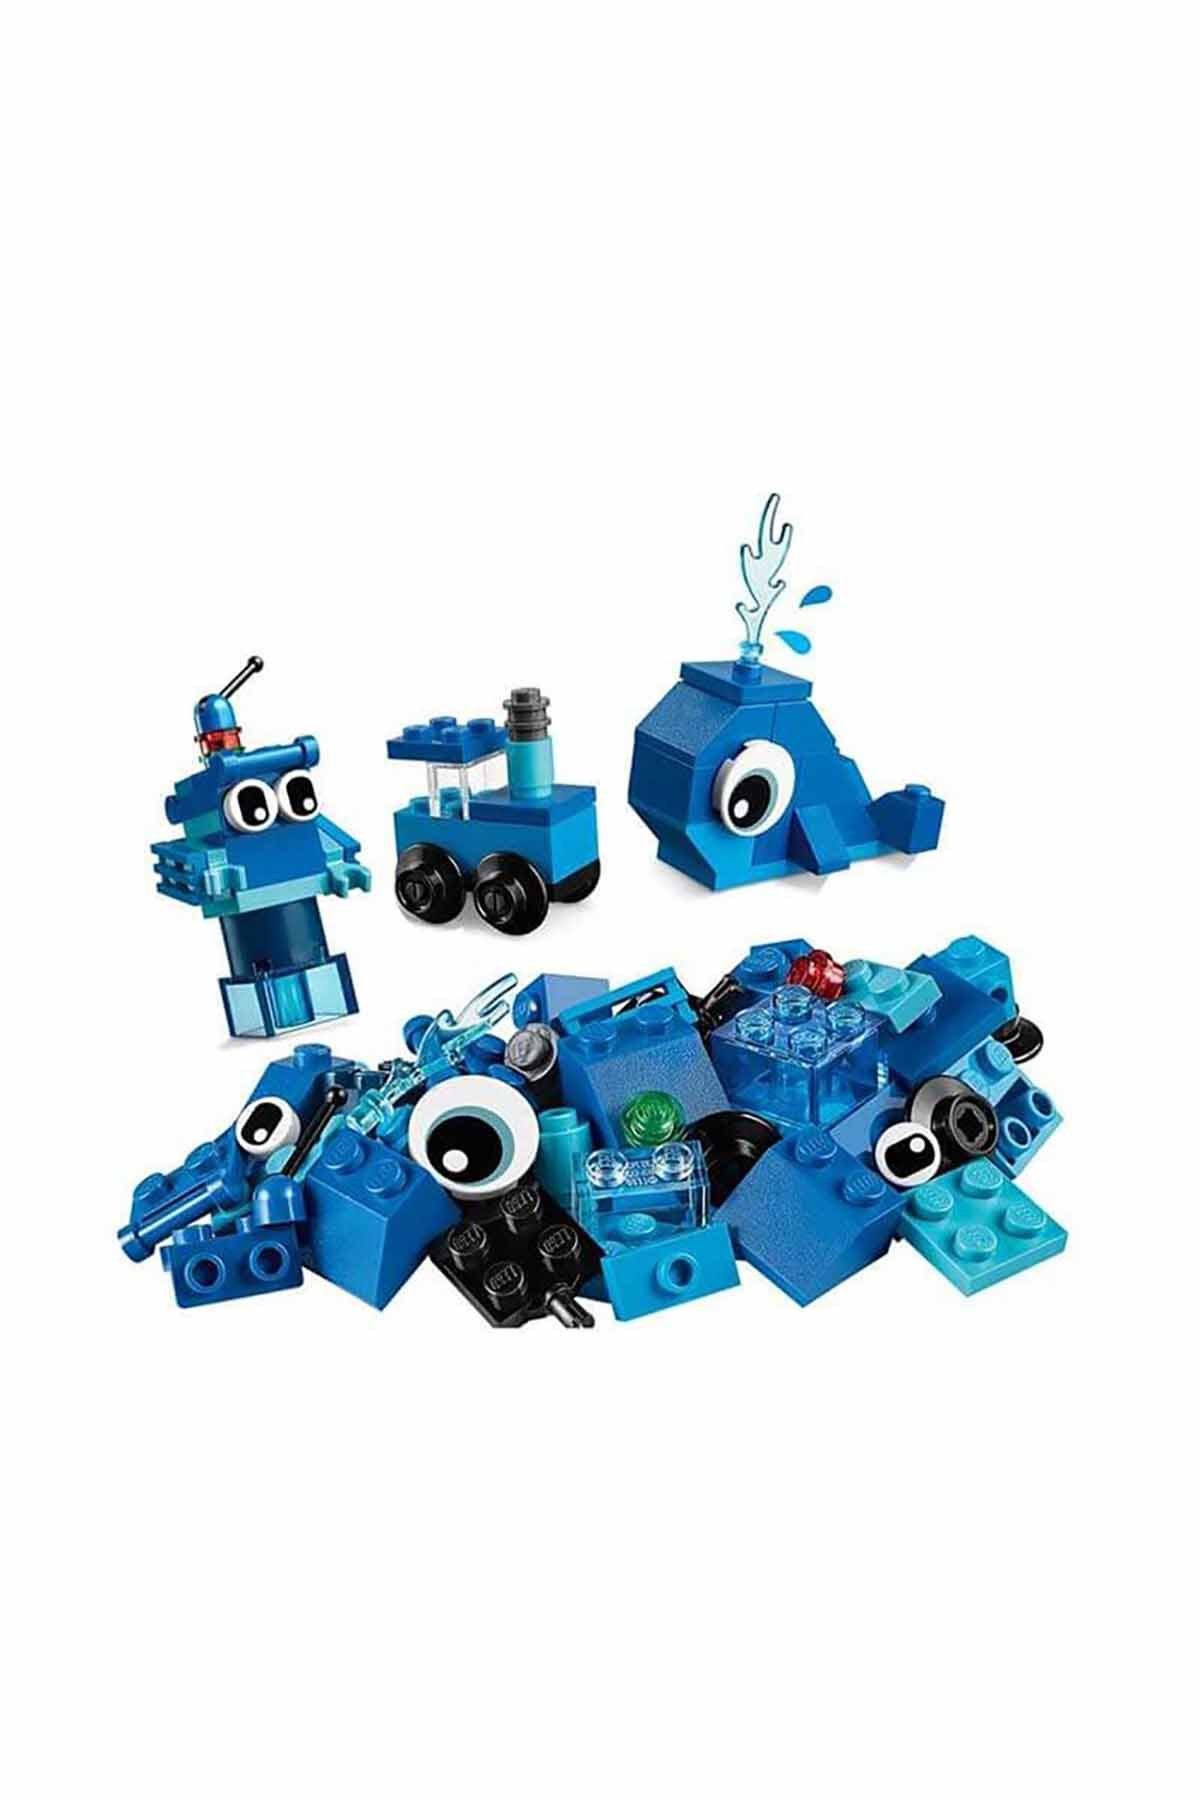 Lego Classic Yaratıcı Mavi Yapım Parçaları 11006